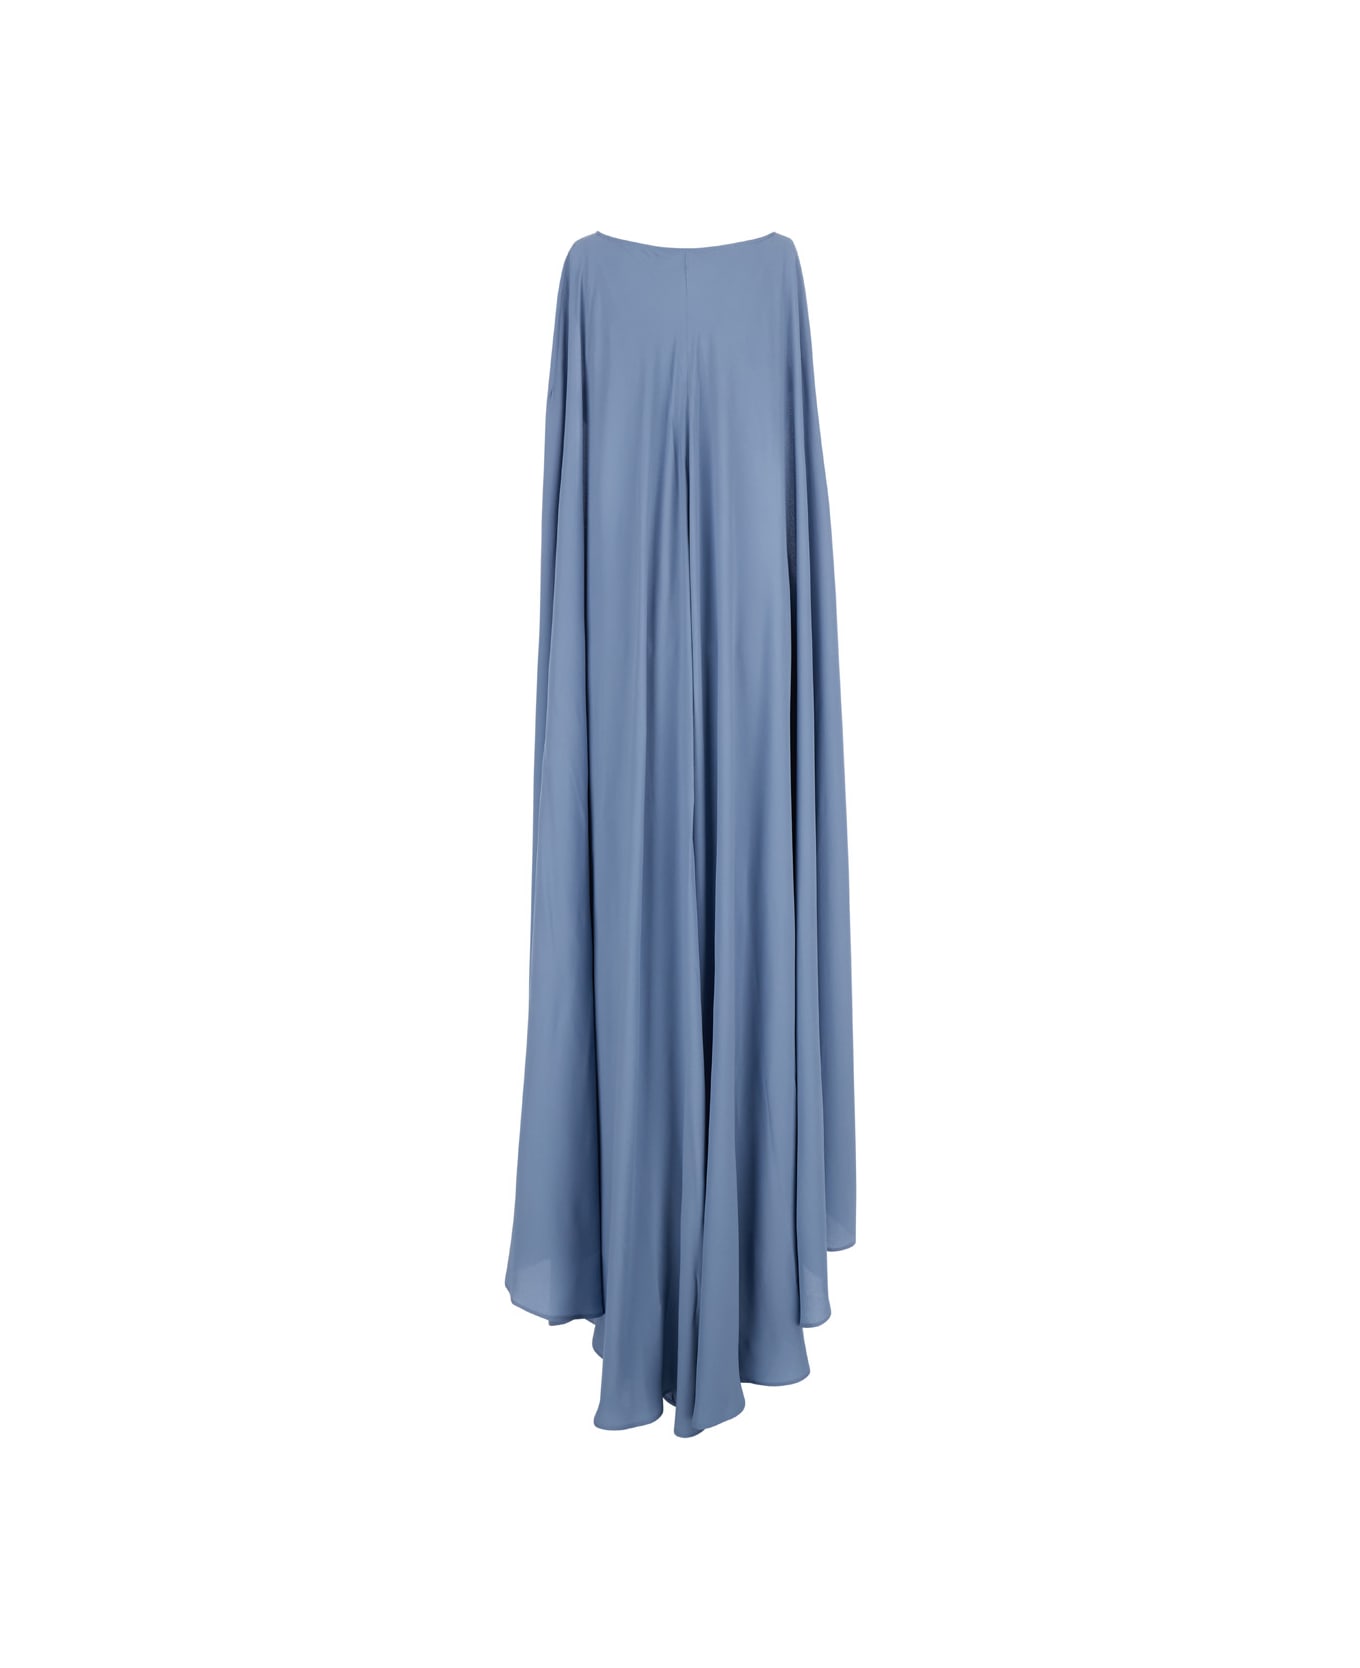 Federica Tosi Light Blue Maxi Dress With Cape In Silk Blend Woman - Blu